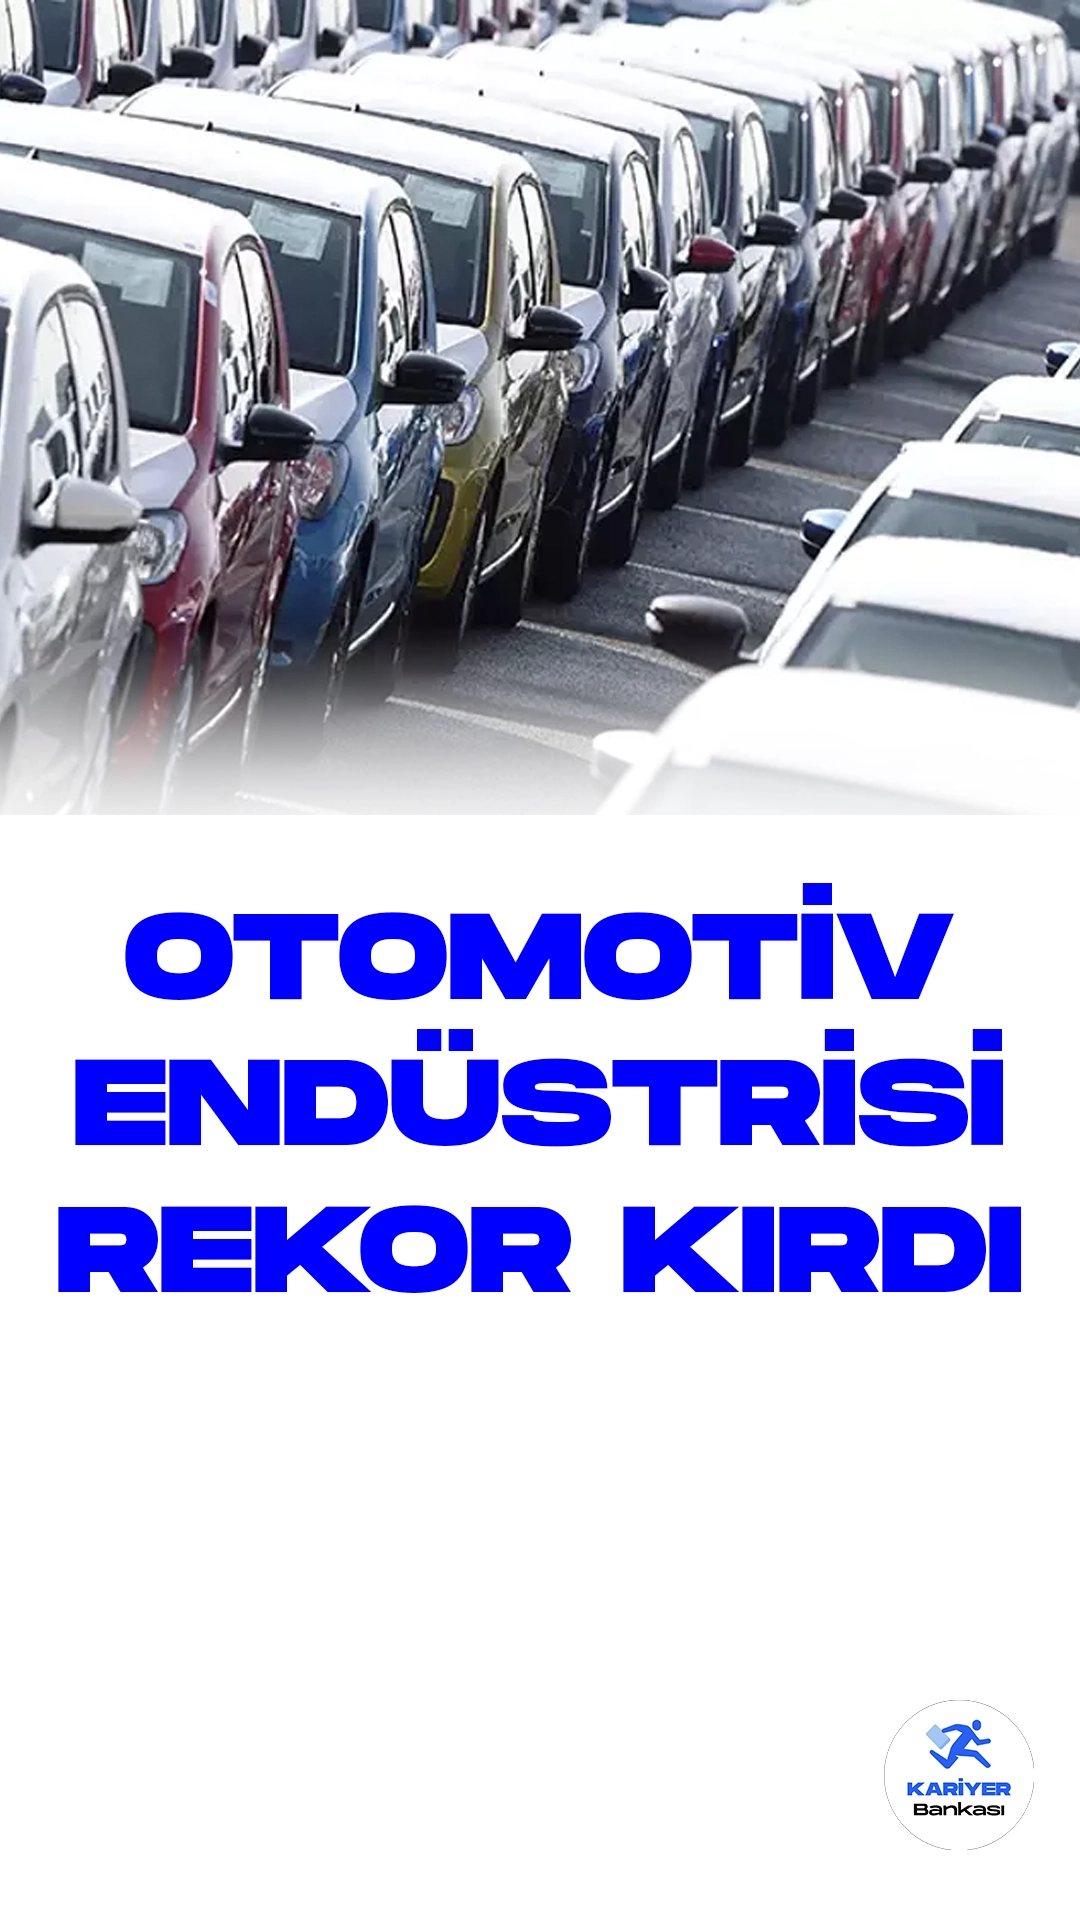 Türkiye Otomotiv Endüstrisi Kasım Ayında Rekor İhracat Gerçekleştirdi.Türkiye'nin otomotiv endüstrisi, son bir ay içinde 3 milyar 172 milyon dolarlık ürünü başarıyla ihraç etti. Uludağ Otomotiv Endüstrisi İhracatçıları Birliği (OİB) tarafından yapılan açıklamaya göre, Kasım ayındaki ihracat, bir önceki yılın aynı dönemine göre yüzde 10,4 artışla 3 milyar 172 milyon 87 bin doları buldu.